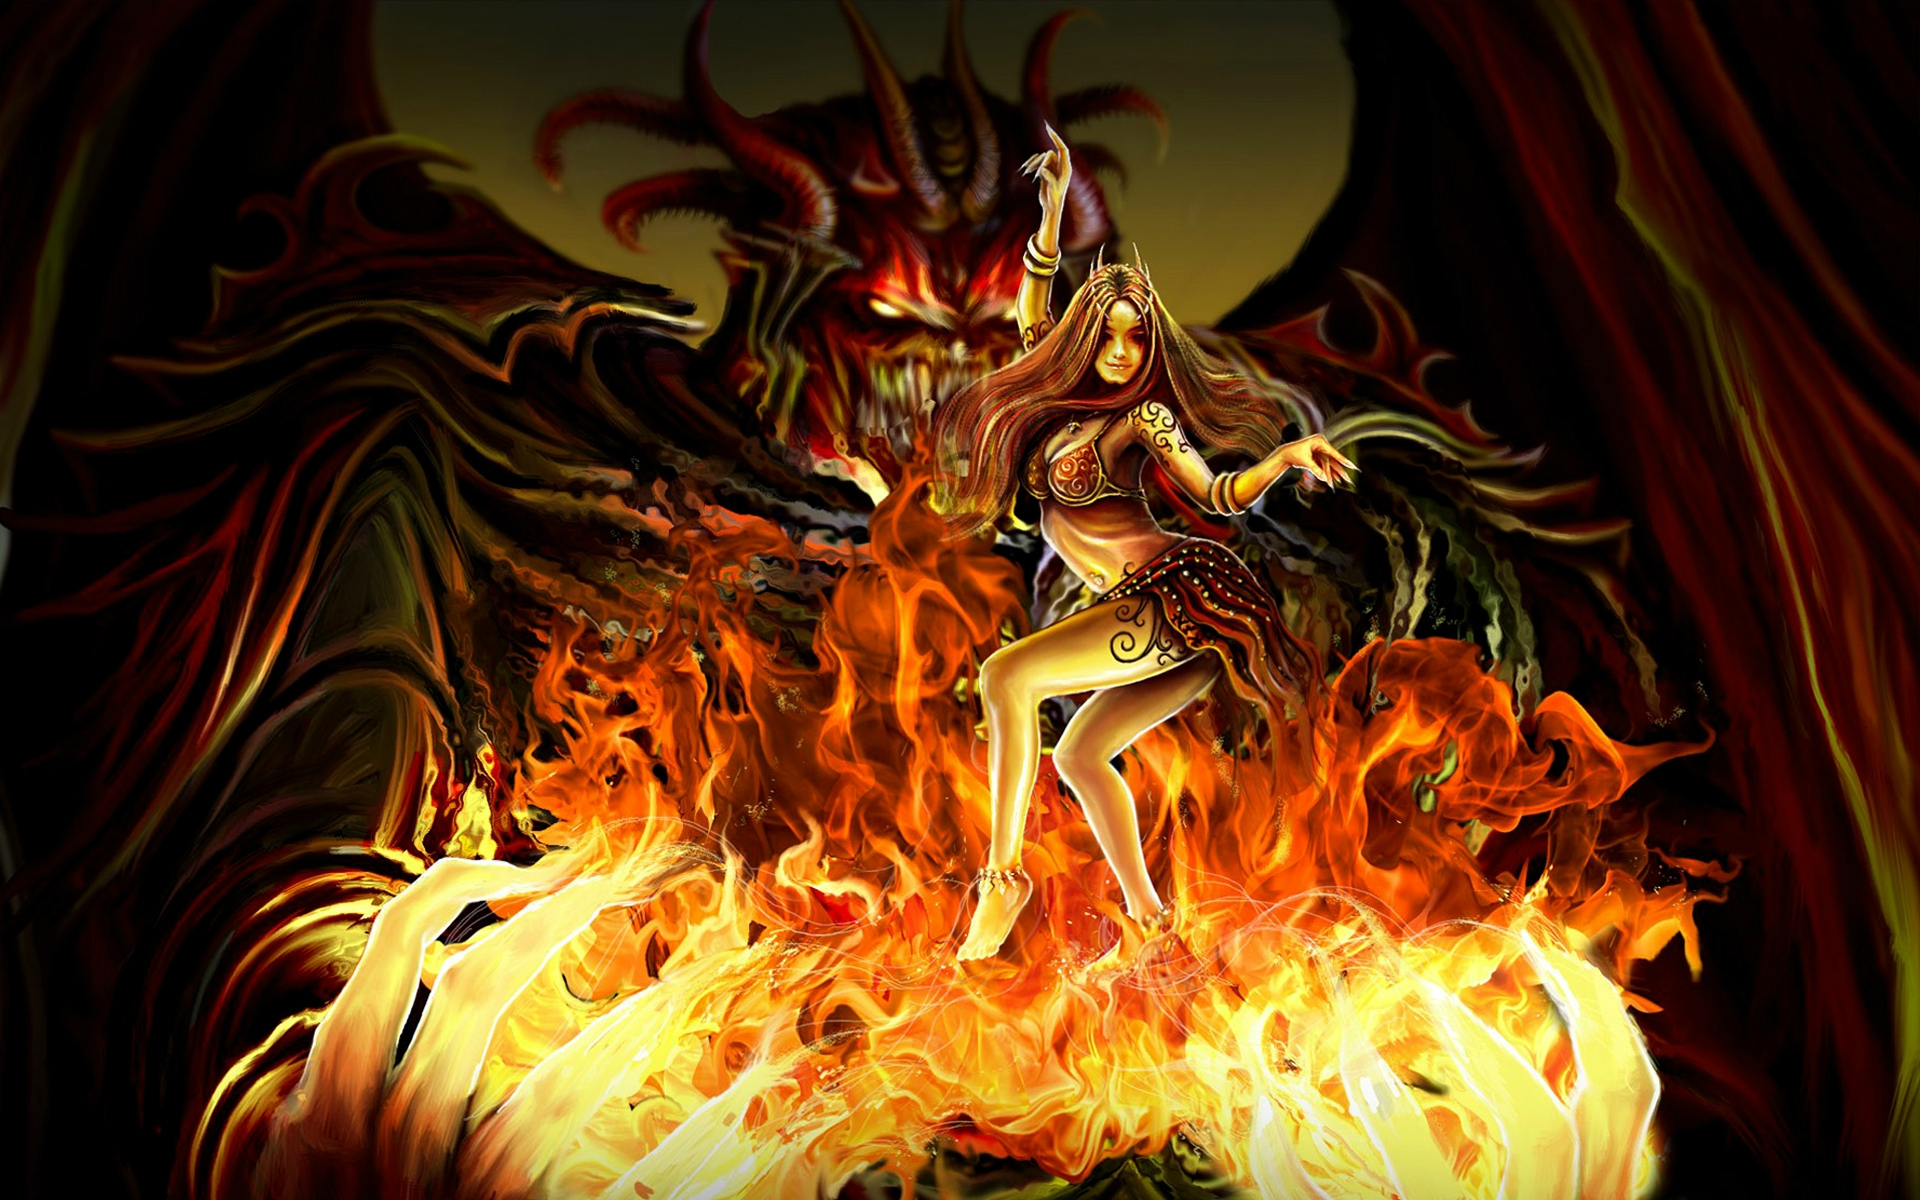 悪魔の壁紙,ドラゴン,火炎,熱,架空の人物,火